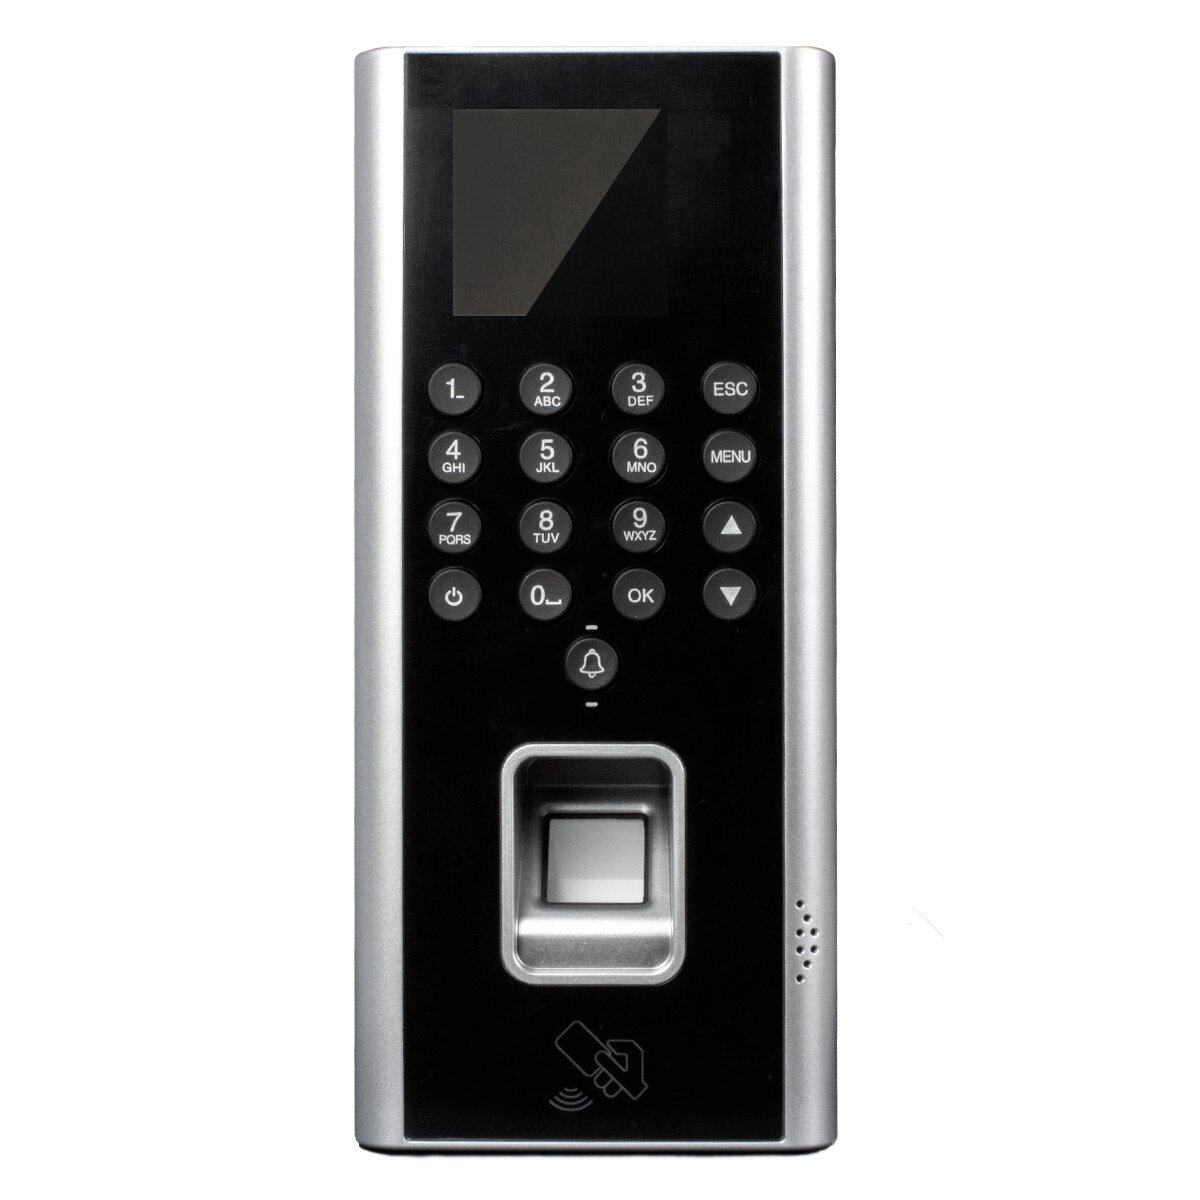 Биометрическая панель доступа PS-link 9700F со сканером отпечатка пальца